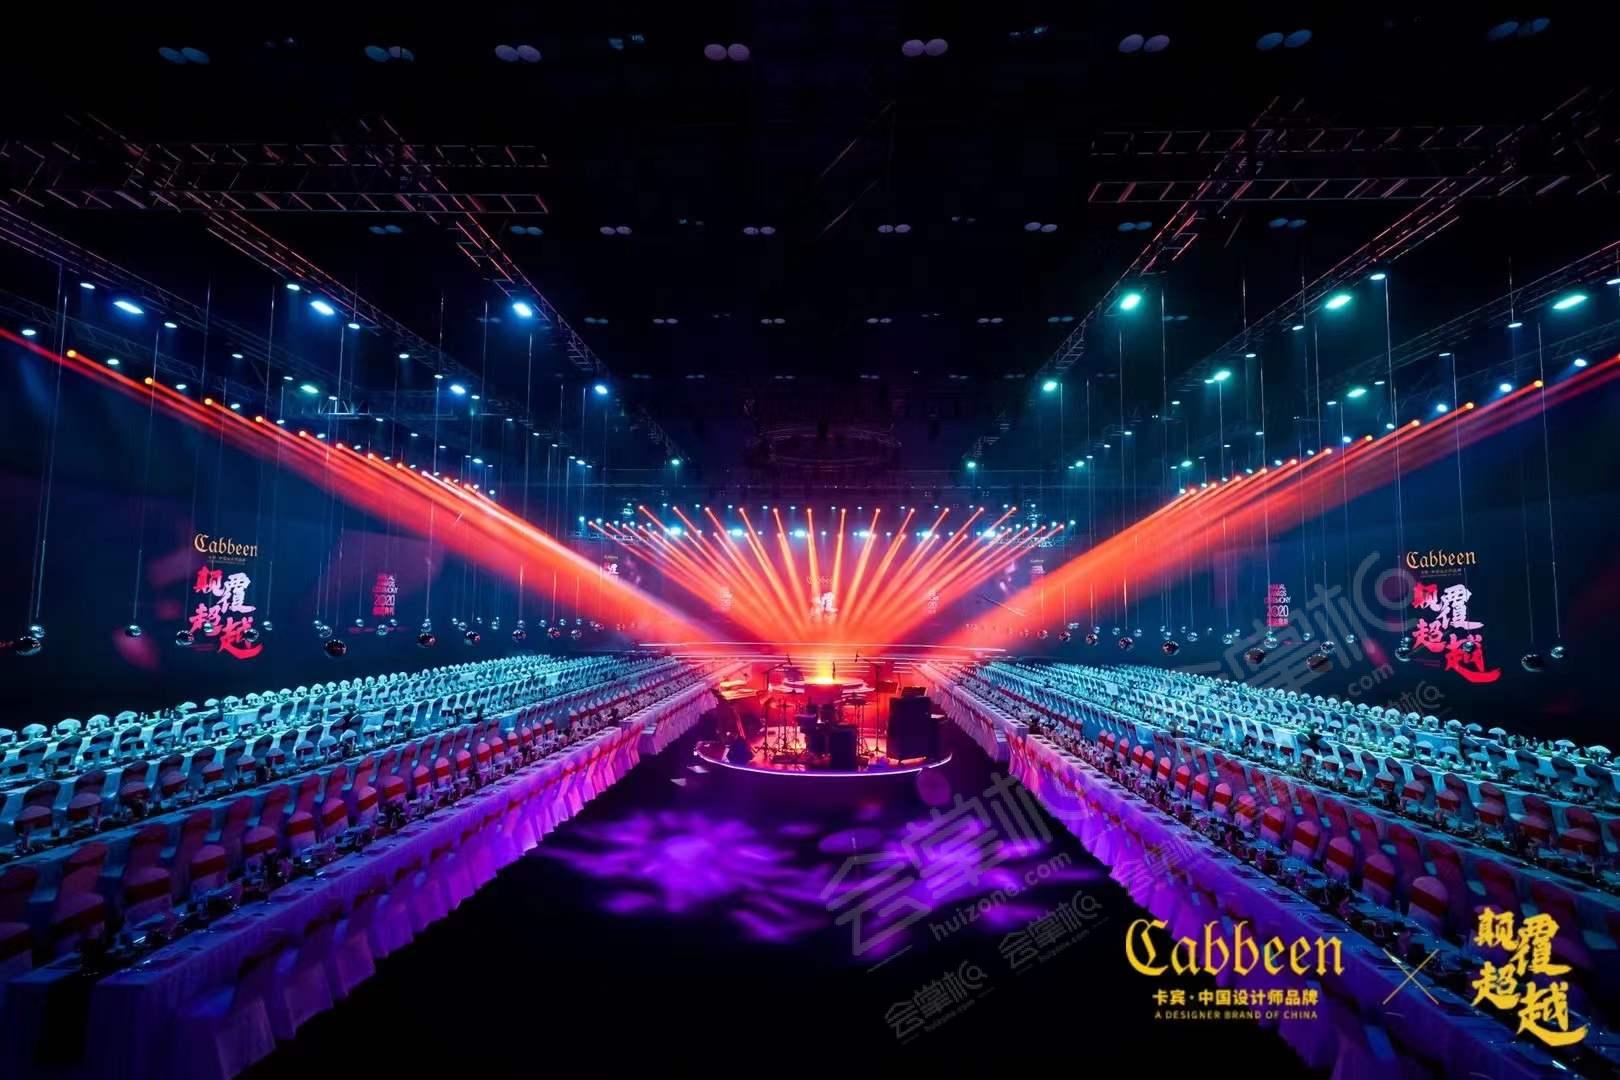 超越颠覆CABBEEN卡宾中国设计师品牌之夜